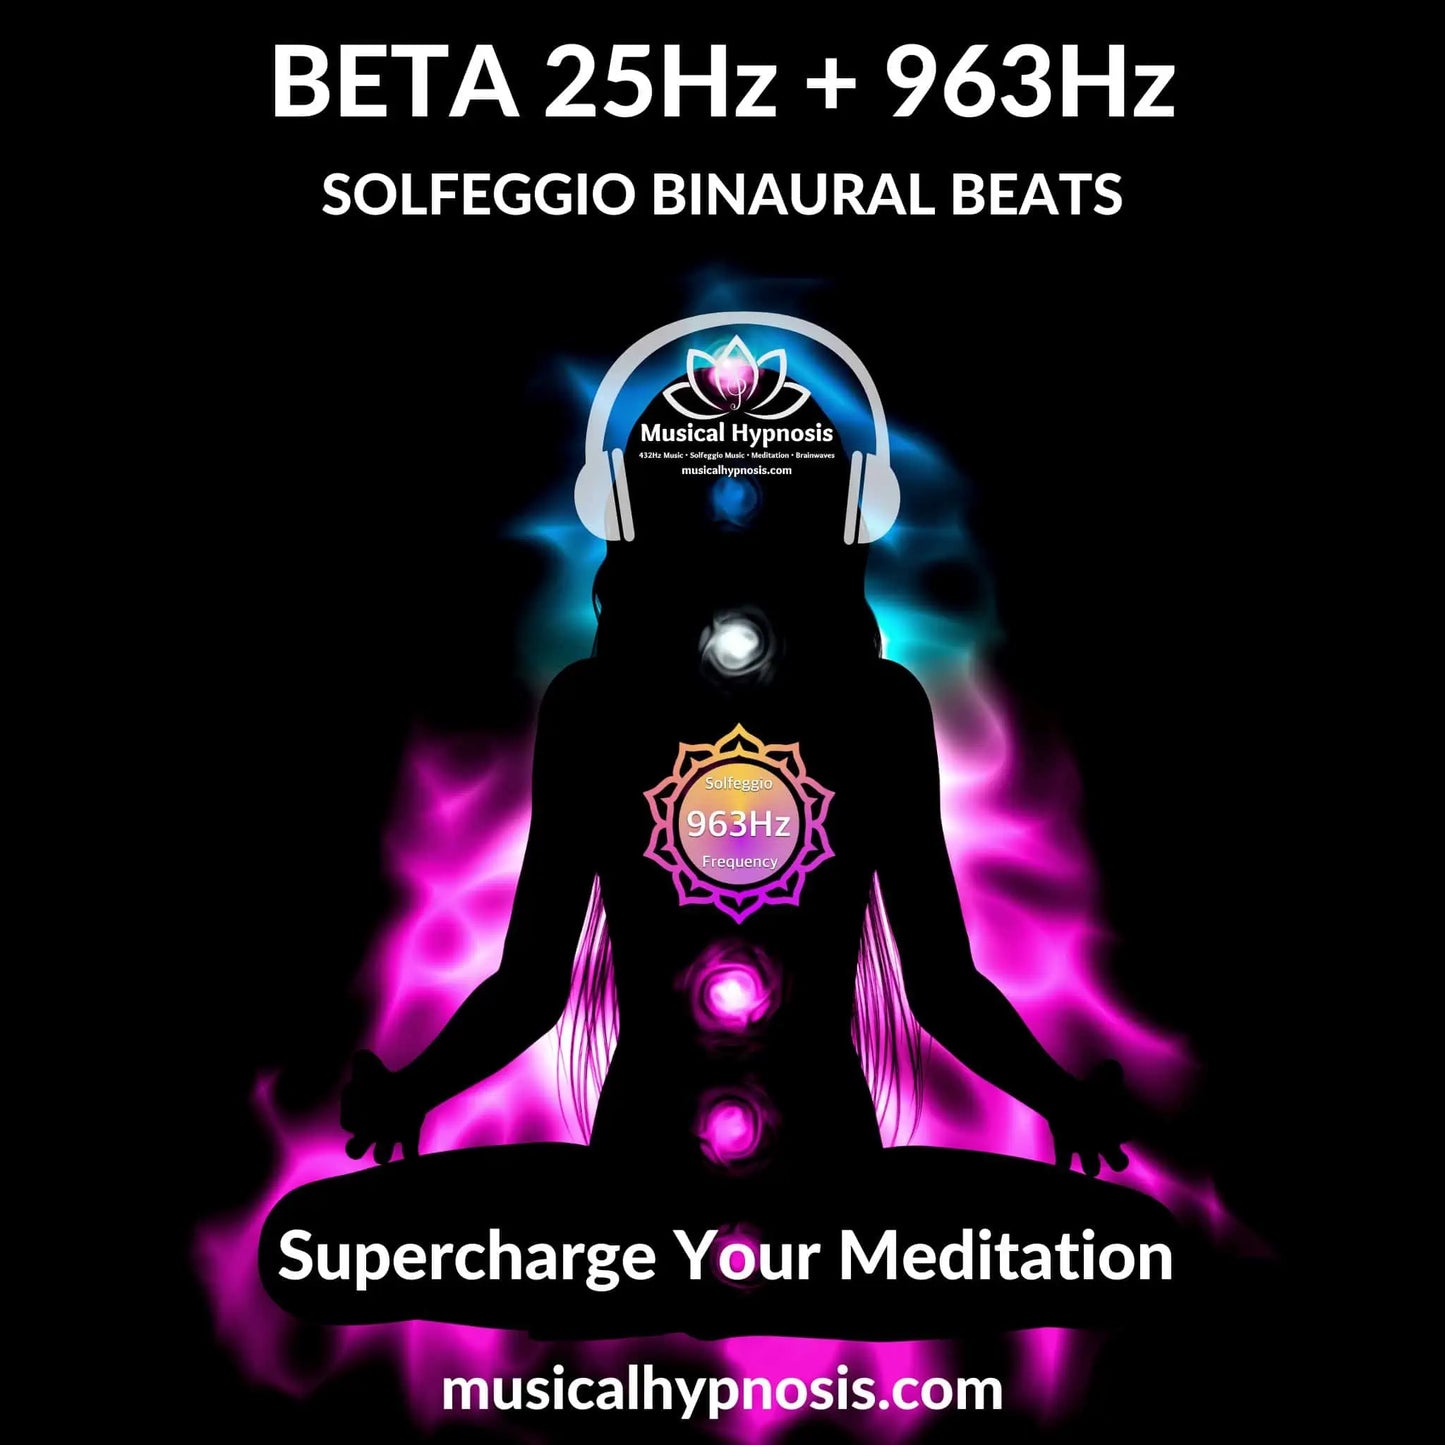 Beta 25Hz and 963Hz Solfeggio Binaural Beats | 30 minutes